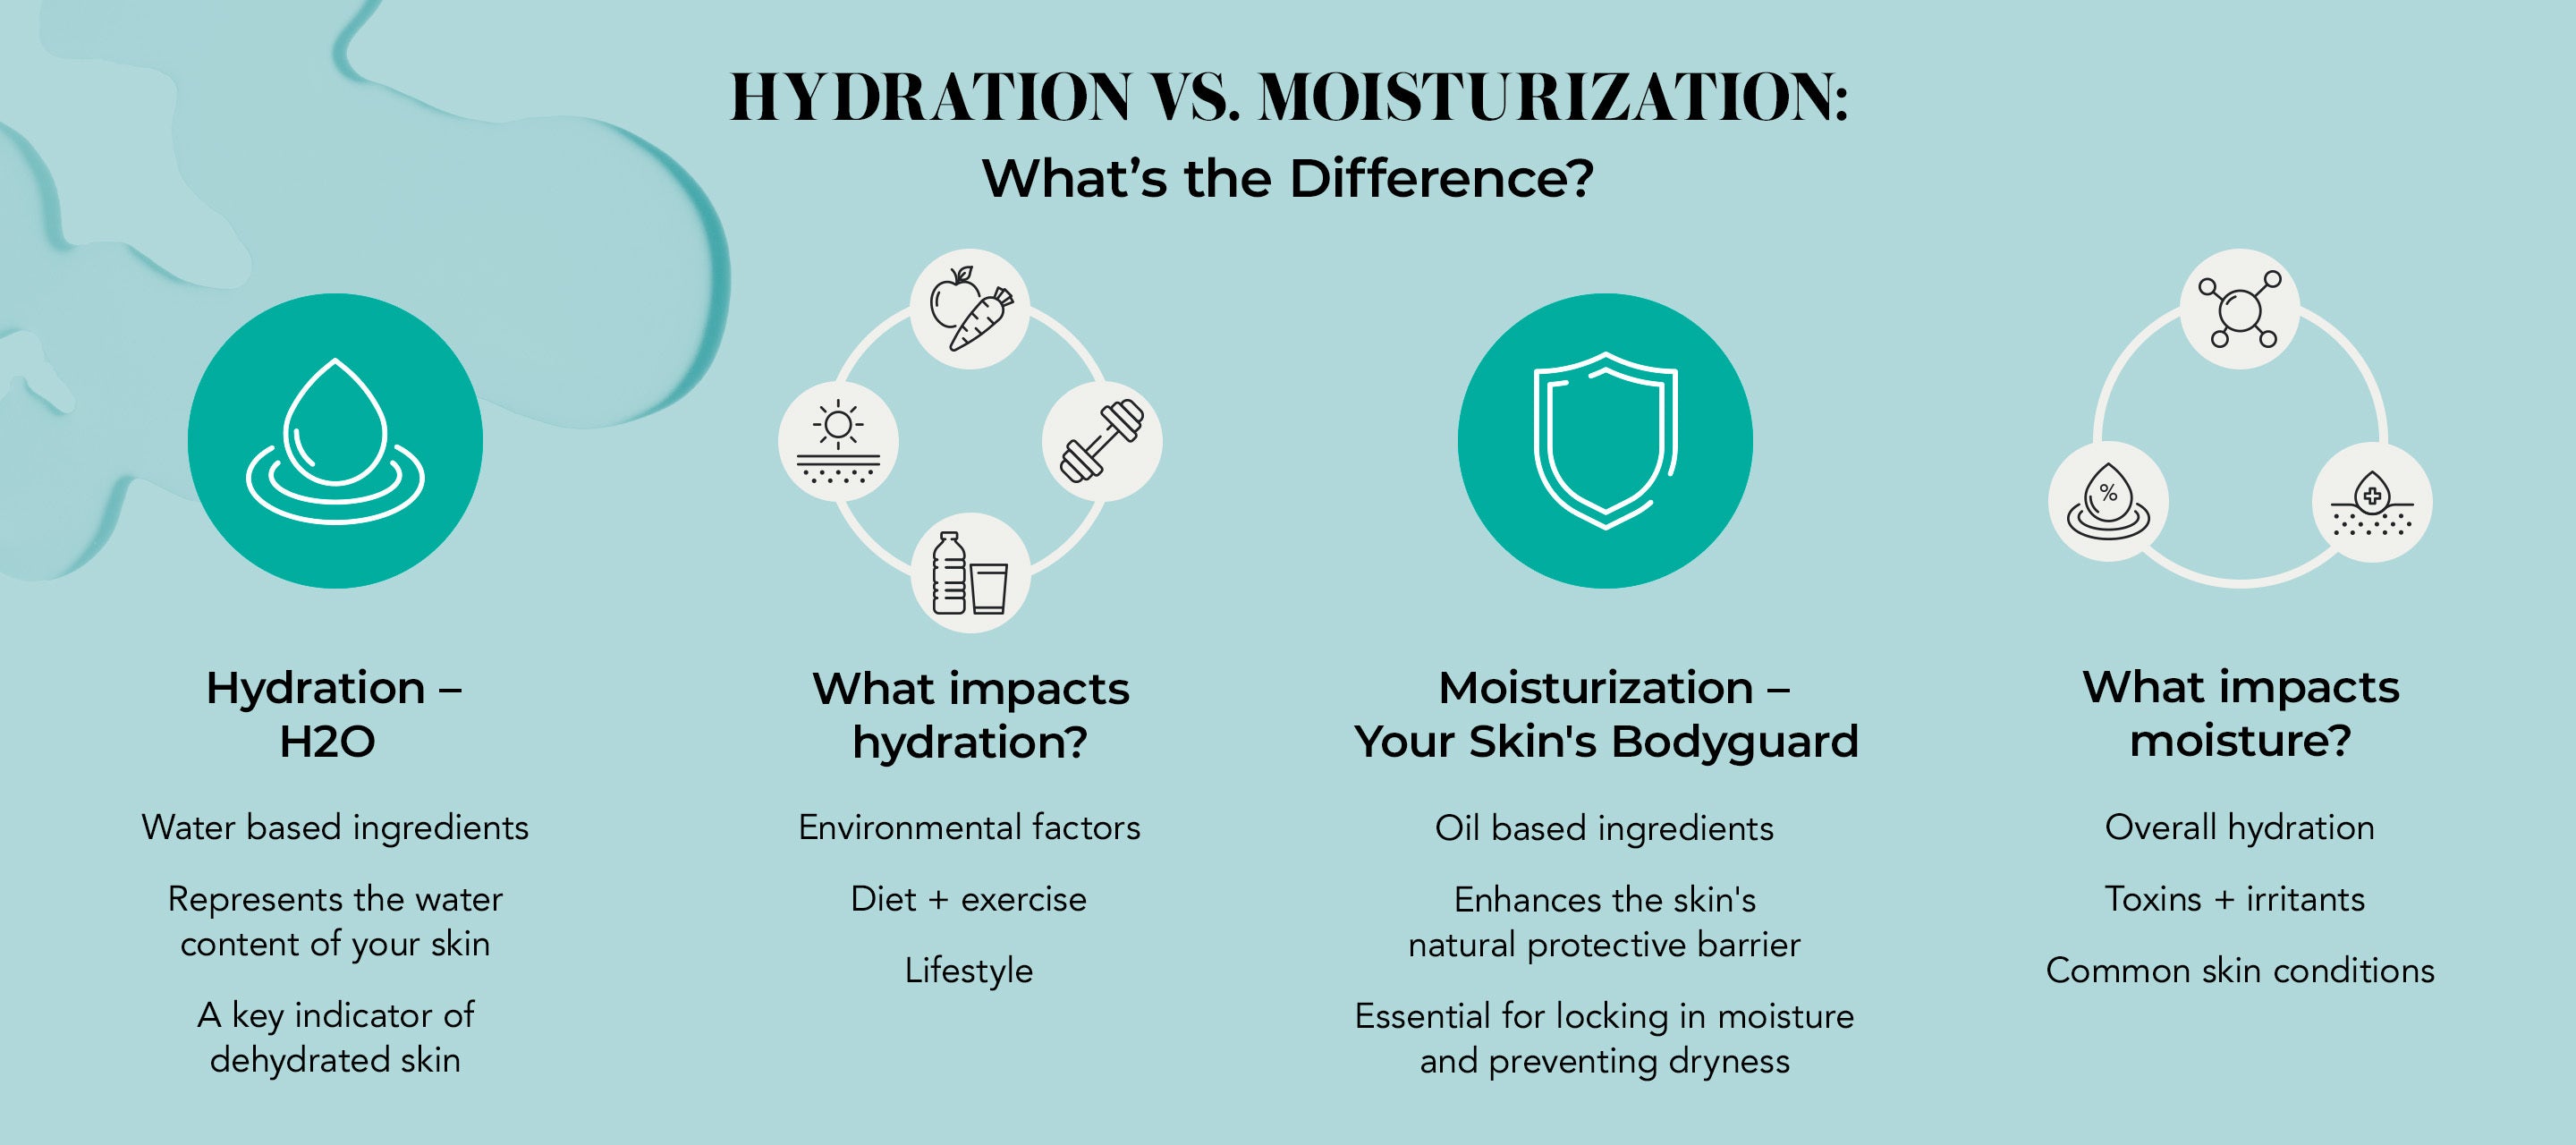 Hydration vs. Moisturization